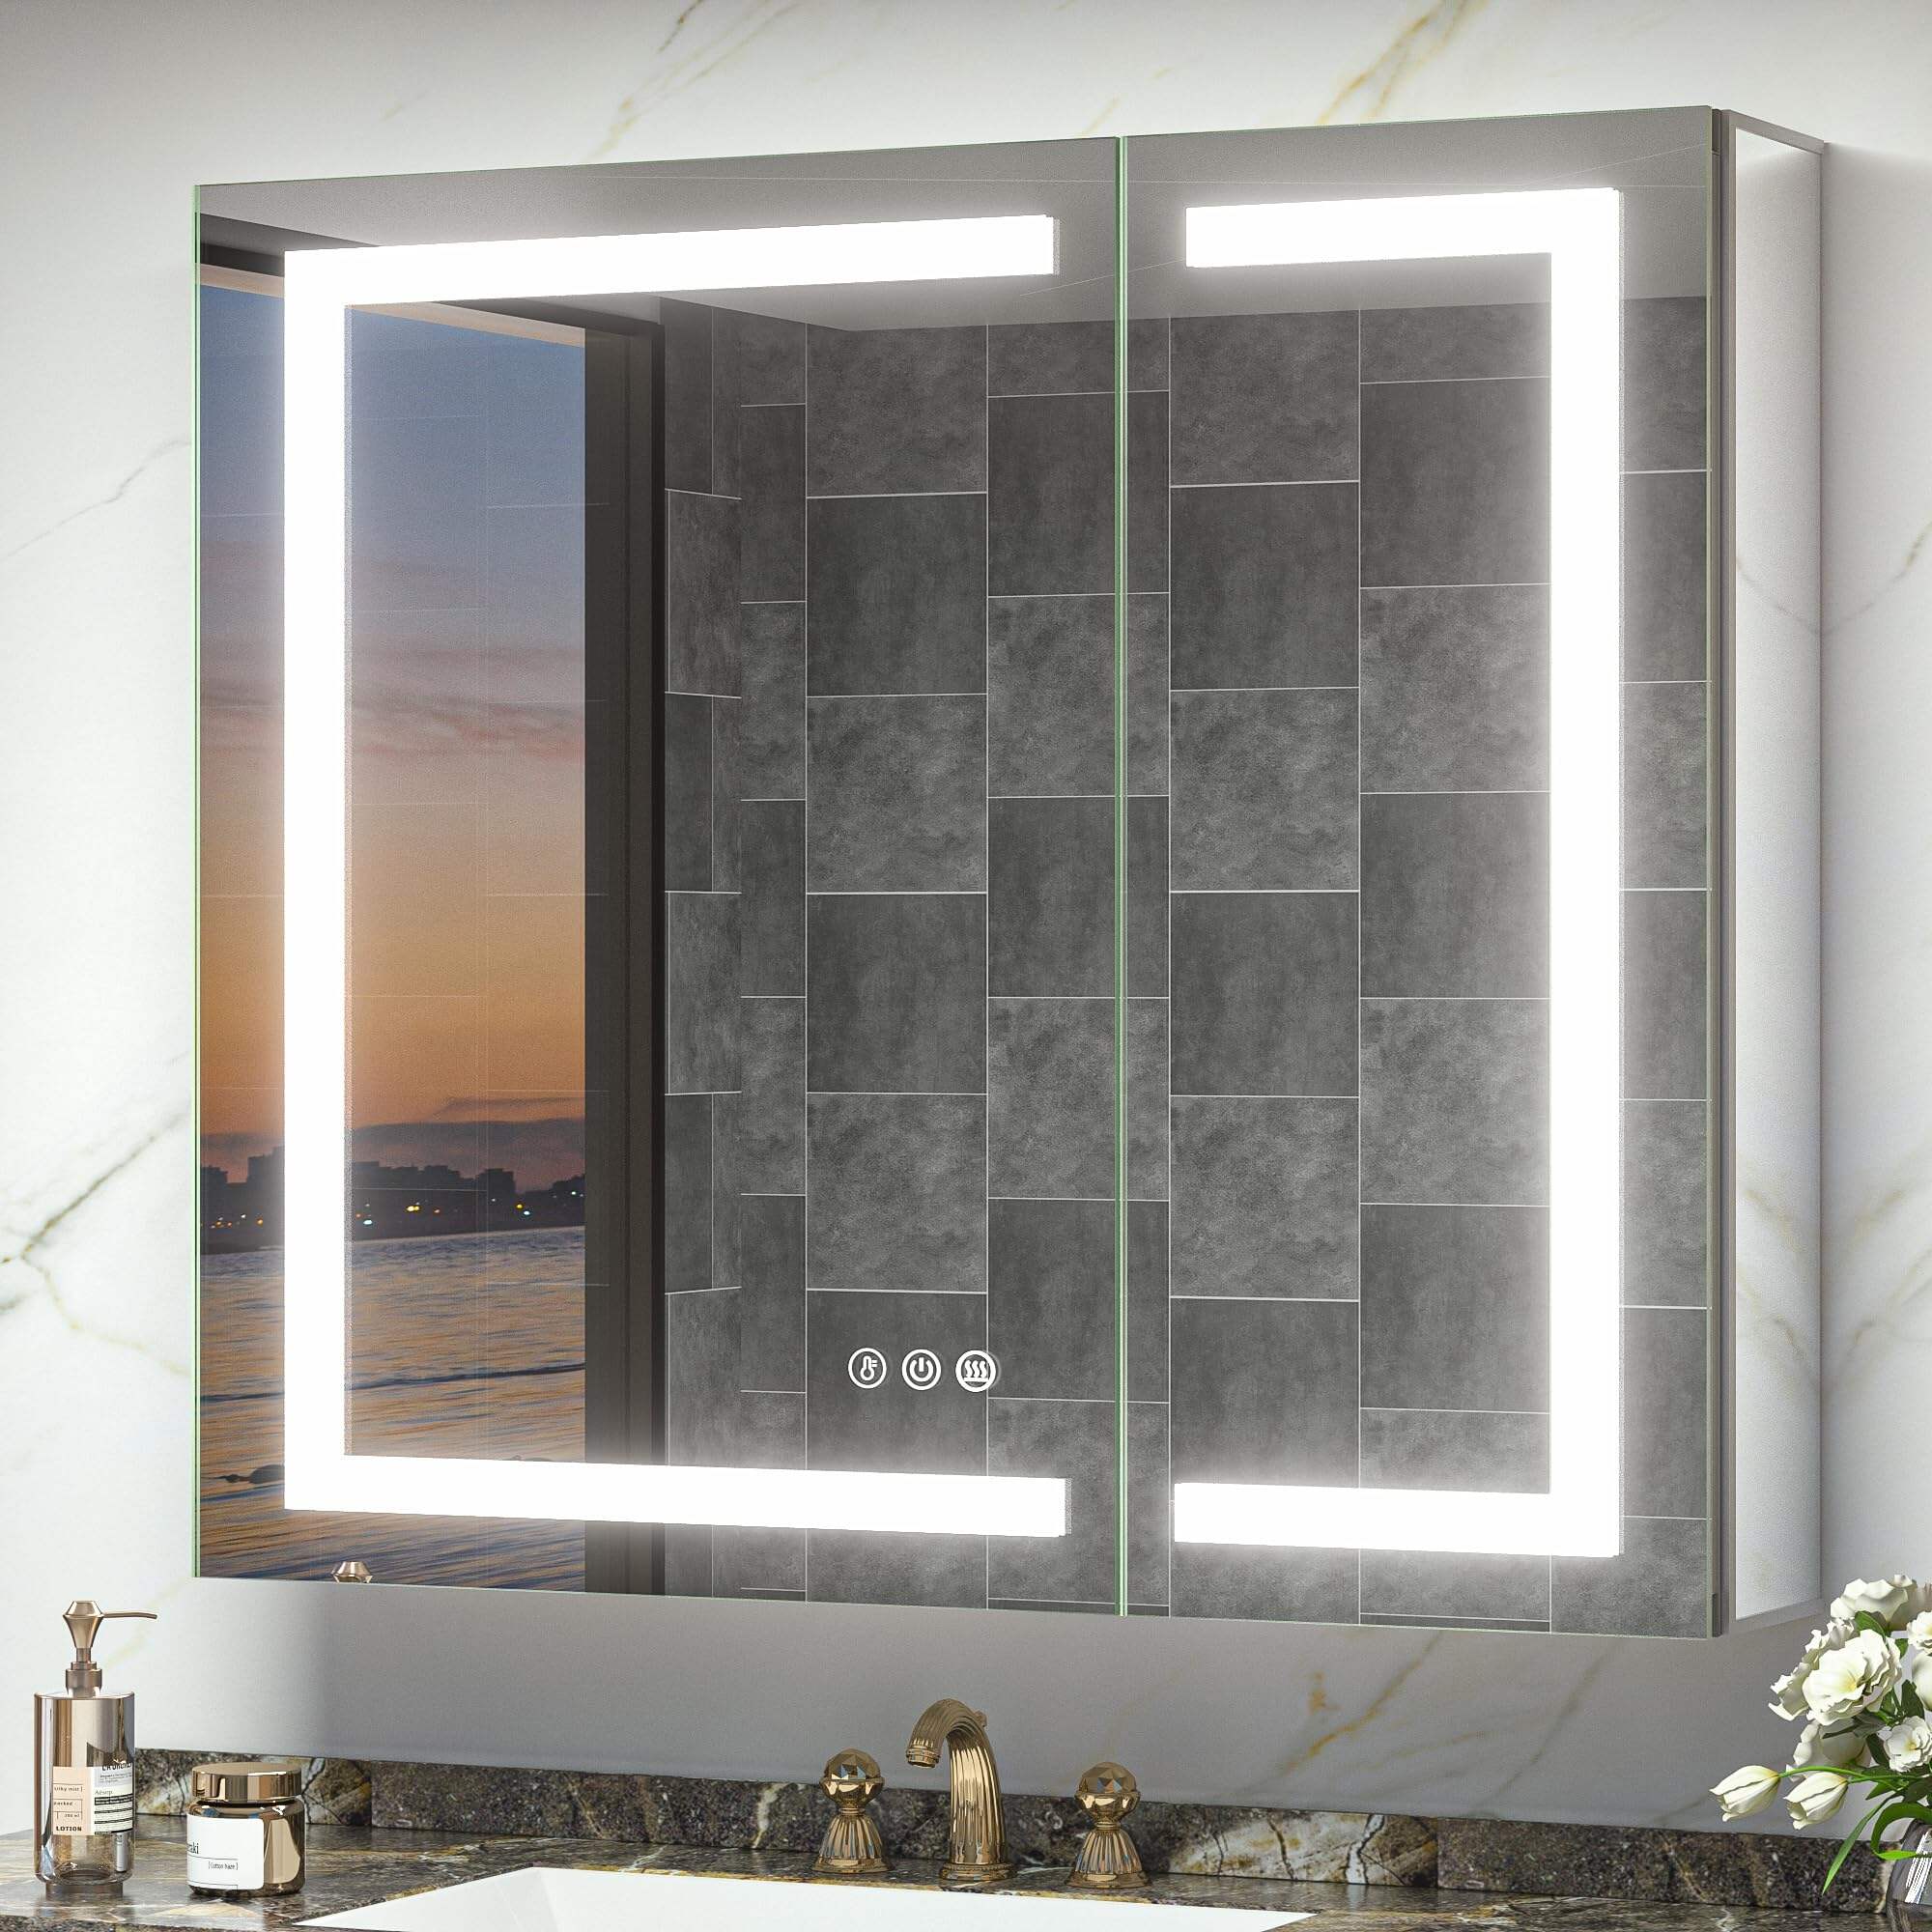 Foshan Haohan Smart Home Co., Ltd. 36x32 verlicht medicijnkastje met spiegel, stopcontact, frontlit anti-condens 3 kleuren temperatuur dimbaar oppervlak of inbouwmontage voor badkamerijdelheid en moderne inrichting